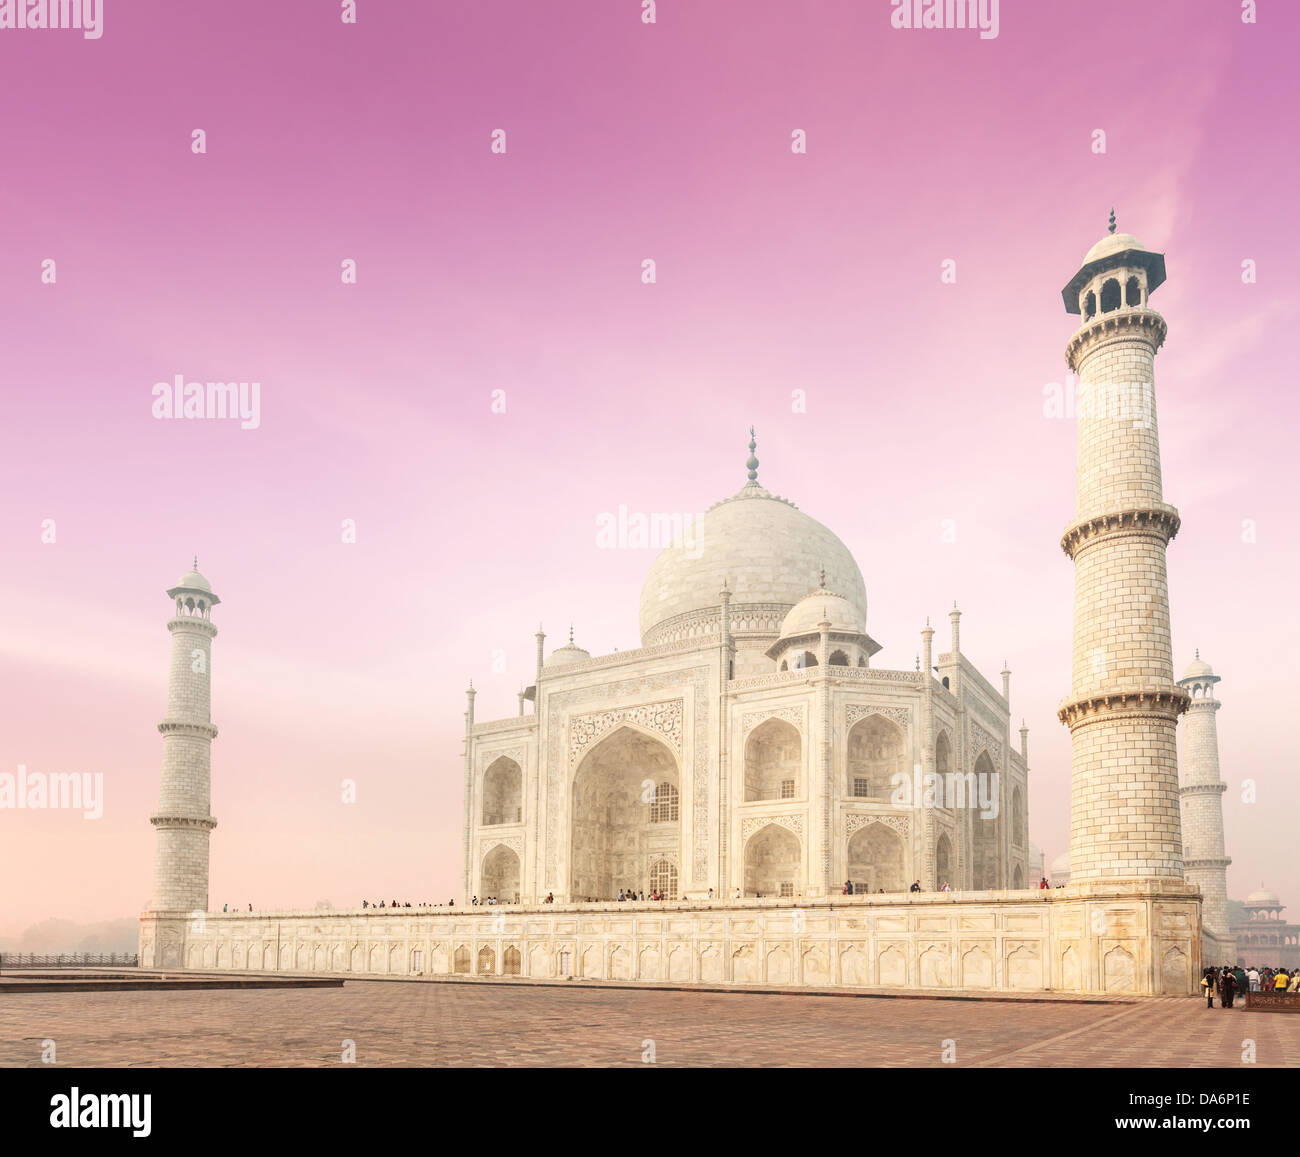 Taj Mahal auf Sonnenaufgang. Indischen Symbol - Indien Reisen Hintergrund. Agra, Indien Stockfoto